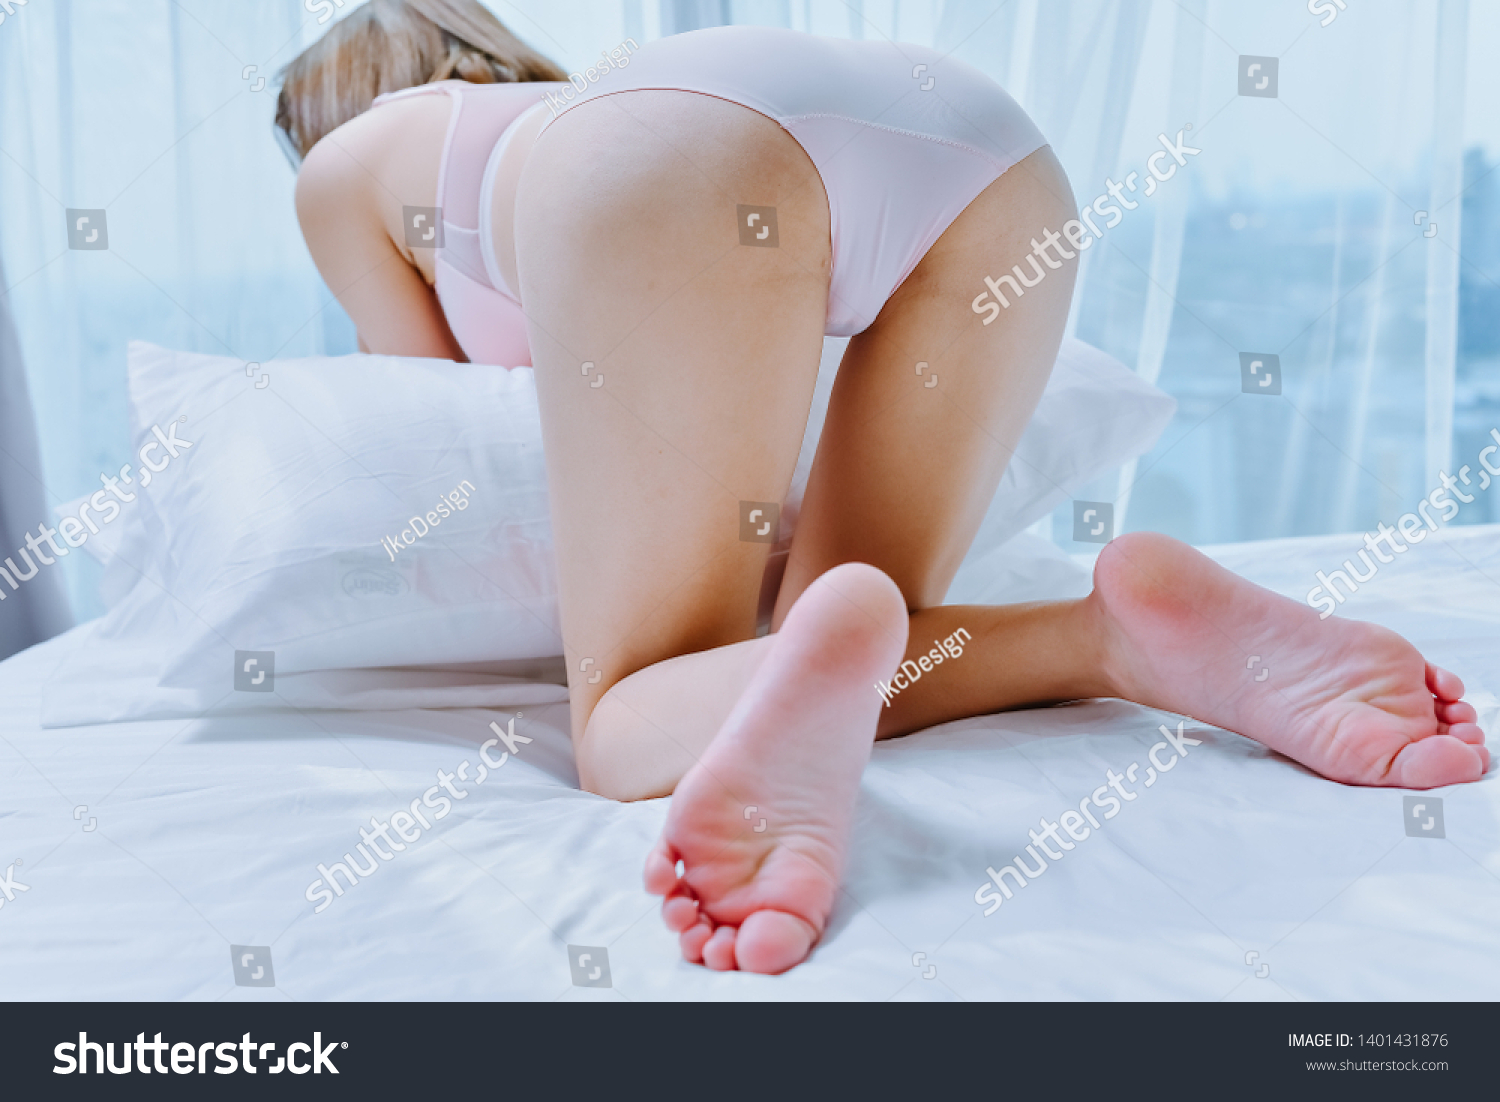 Ass In Panties Pics